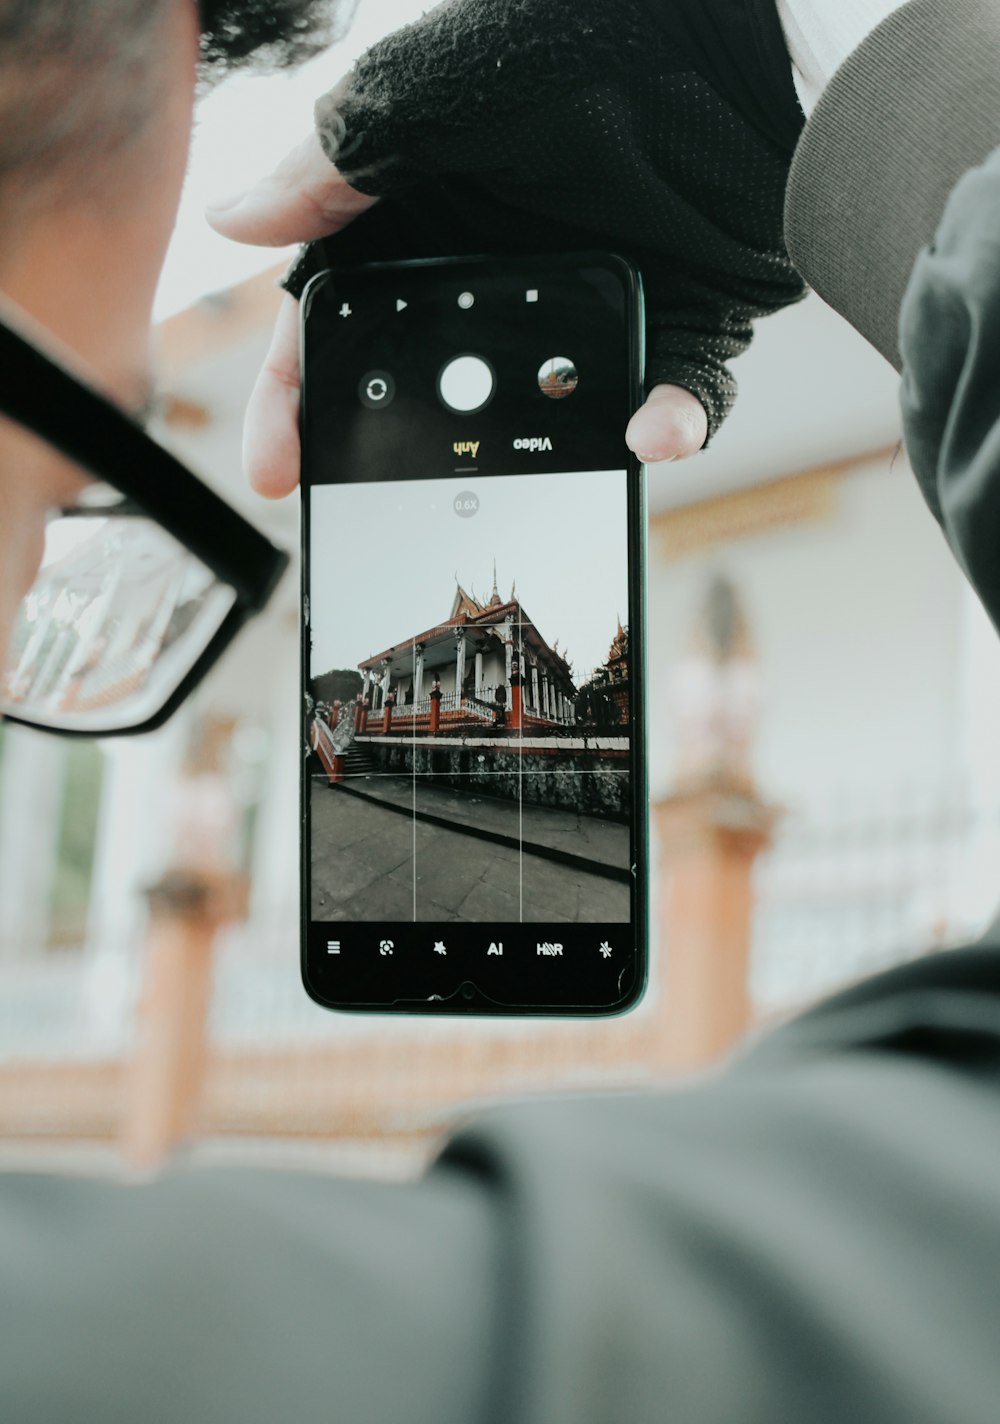 pessoa segurando iphone 5 preto tirando foto do edifício marrom